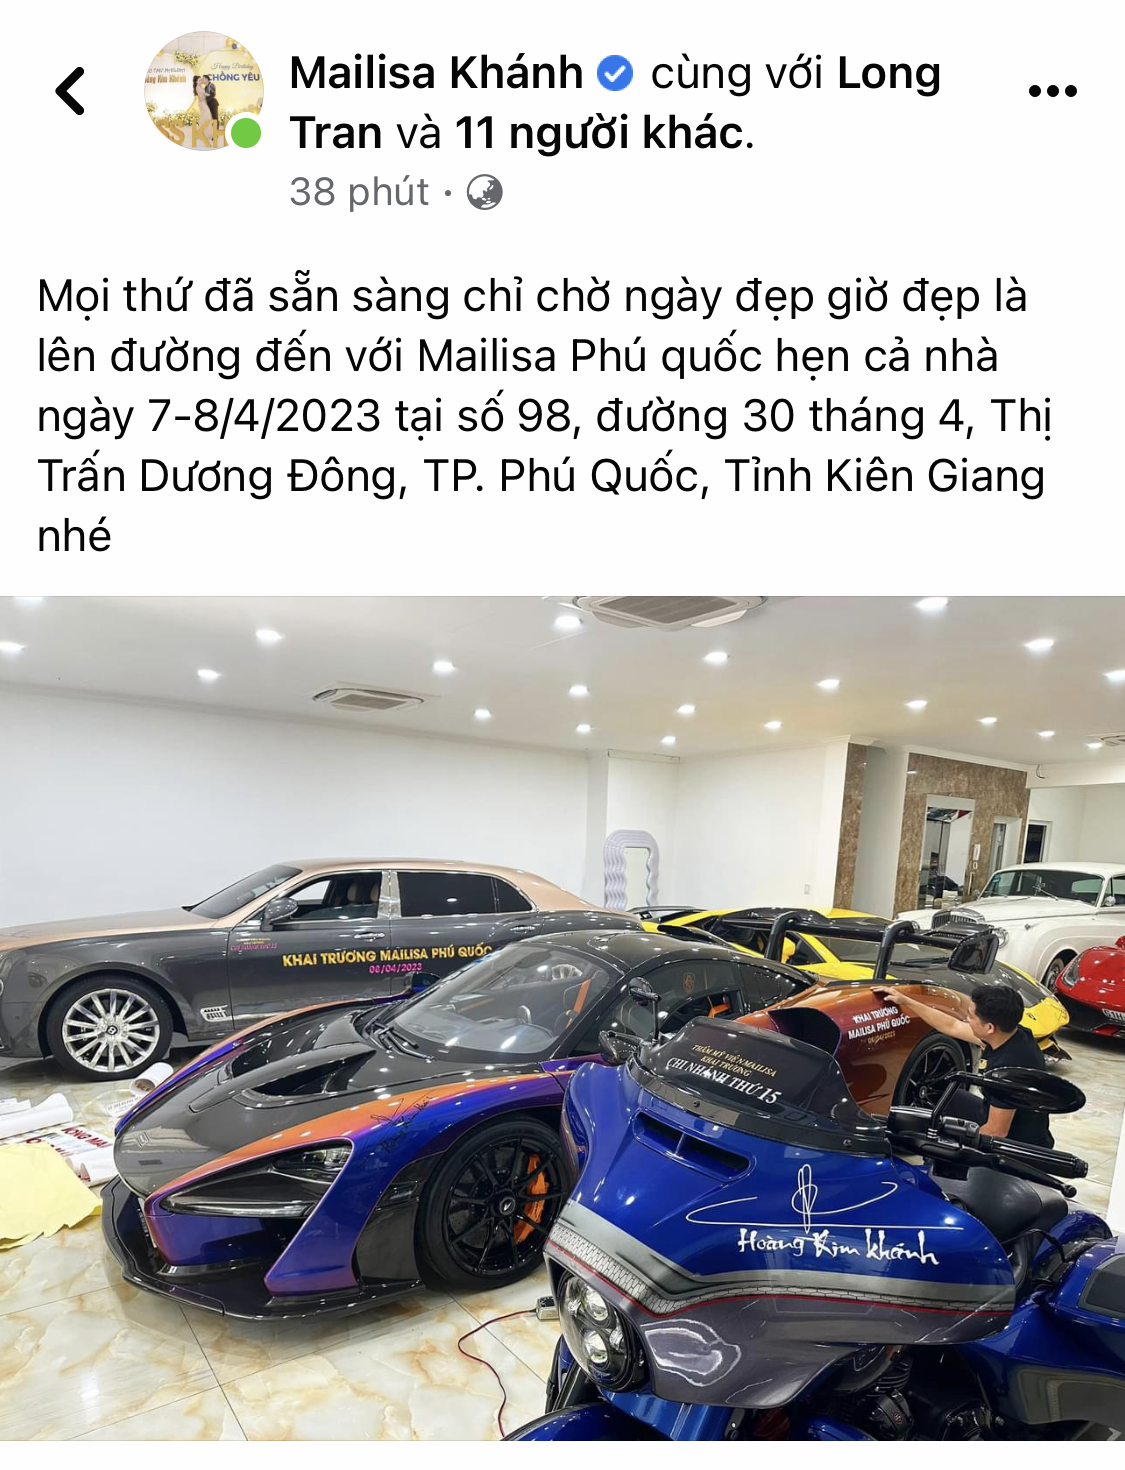 Đại gia Hoàng Kim Khánh tính mang dàn siêu xe trăm tỷ đến Phú Quốc: Siêu phẩm Koenigsegg có thể tái xuất sau thời gian dài ở ẩn - ảnh 1